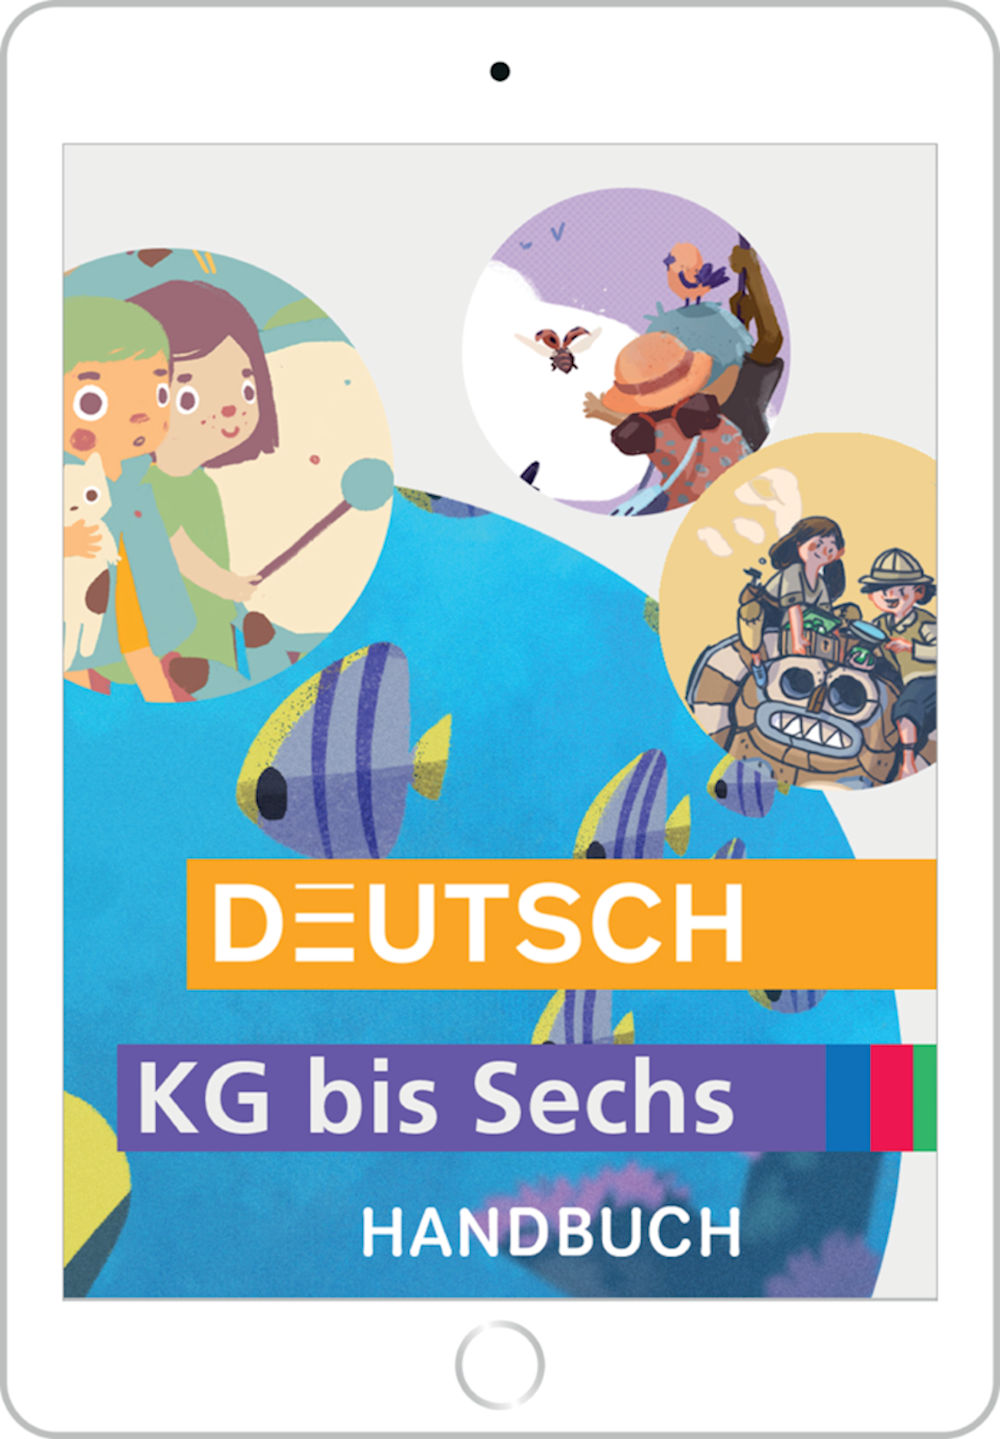 Deutsch KG bis Sechs, Handbuch digital für Lehrpersonen / SPEZIALBESTELLUNG